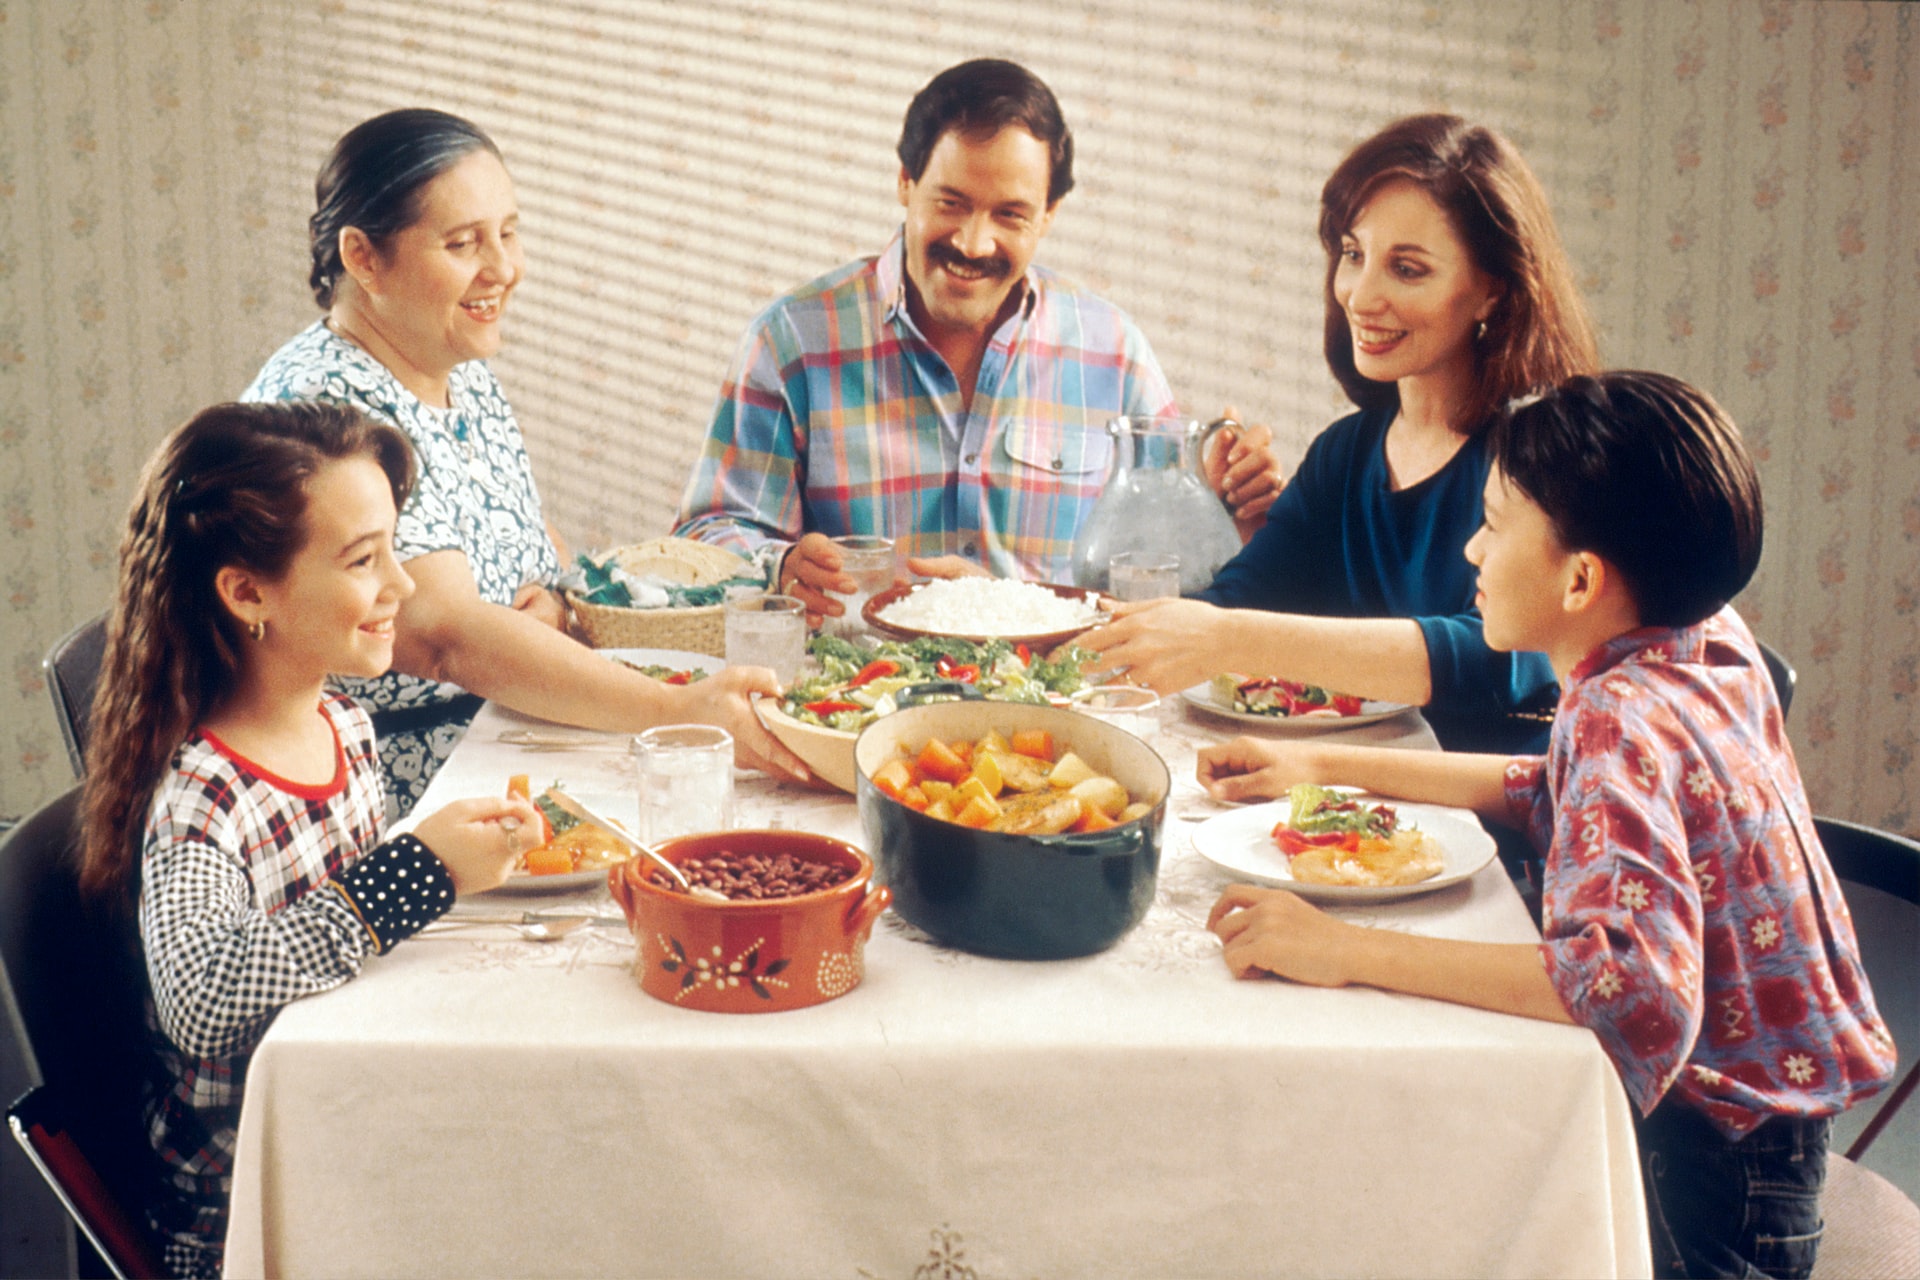 Los momentos alrededor de la mesa, como los tiempos de comida, son ideales para conversar y generar interacción con la familia. (Foto Prensa Libre:  National Cancer Institute en Unsplash).